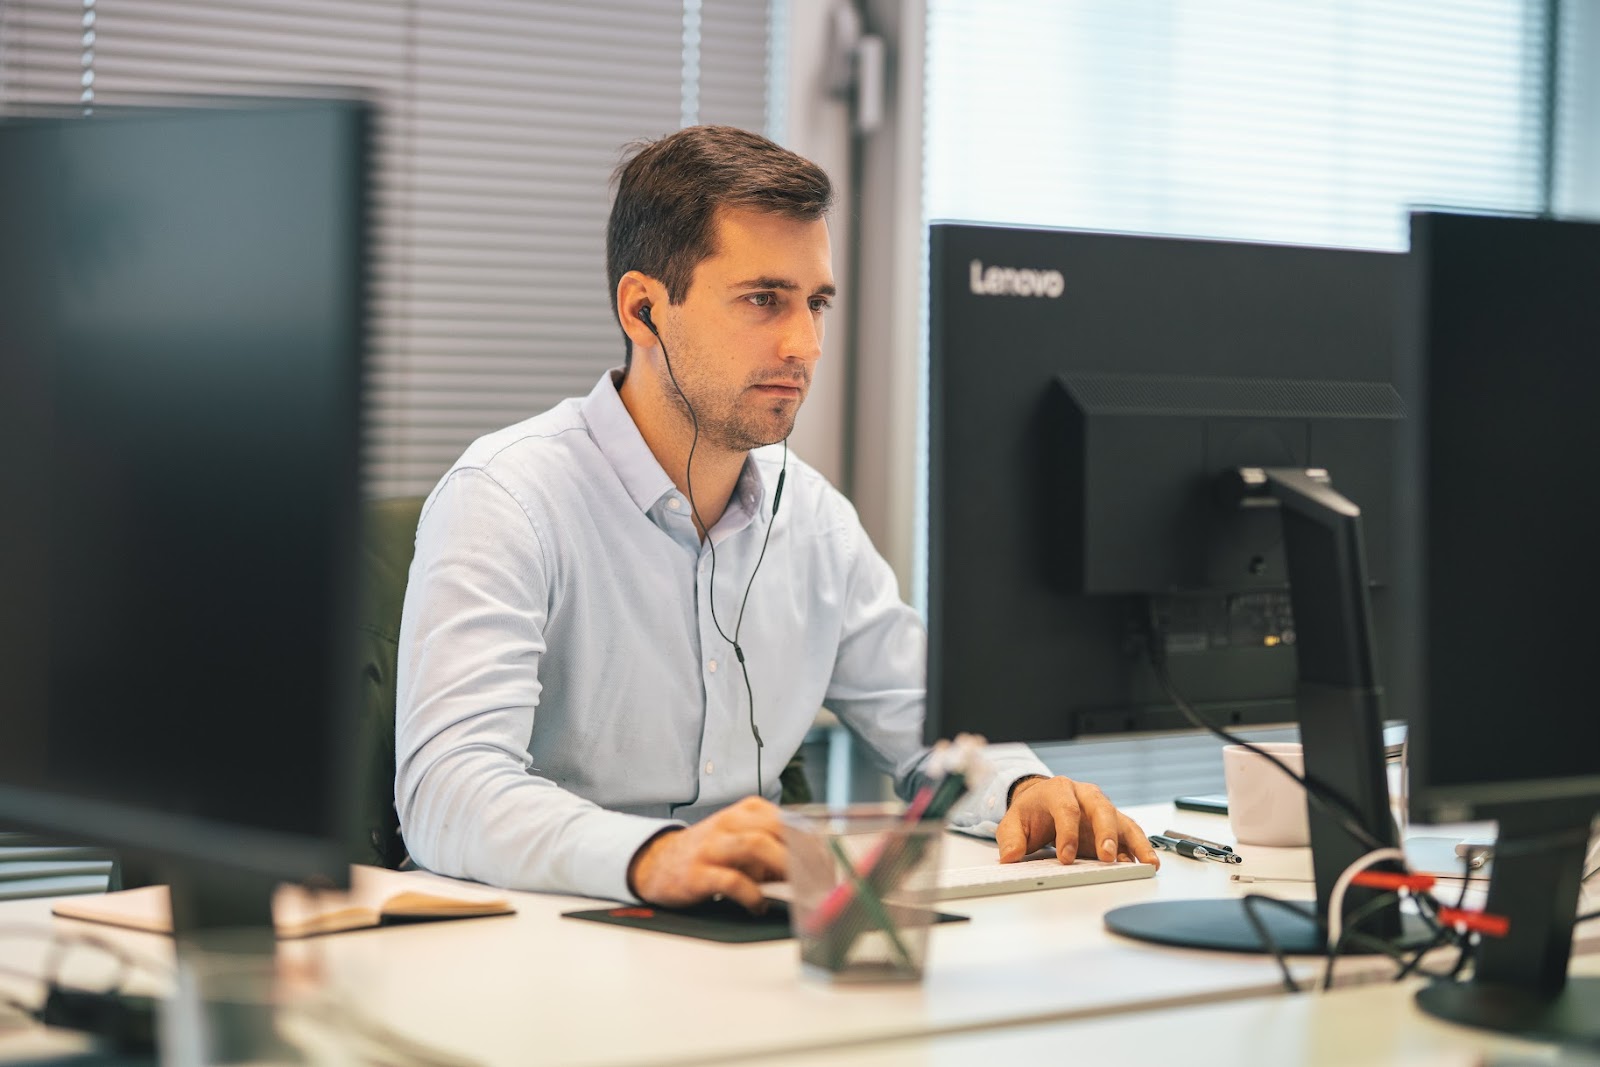 A man working at a computer using several monitors